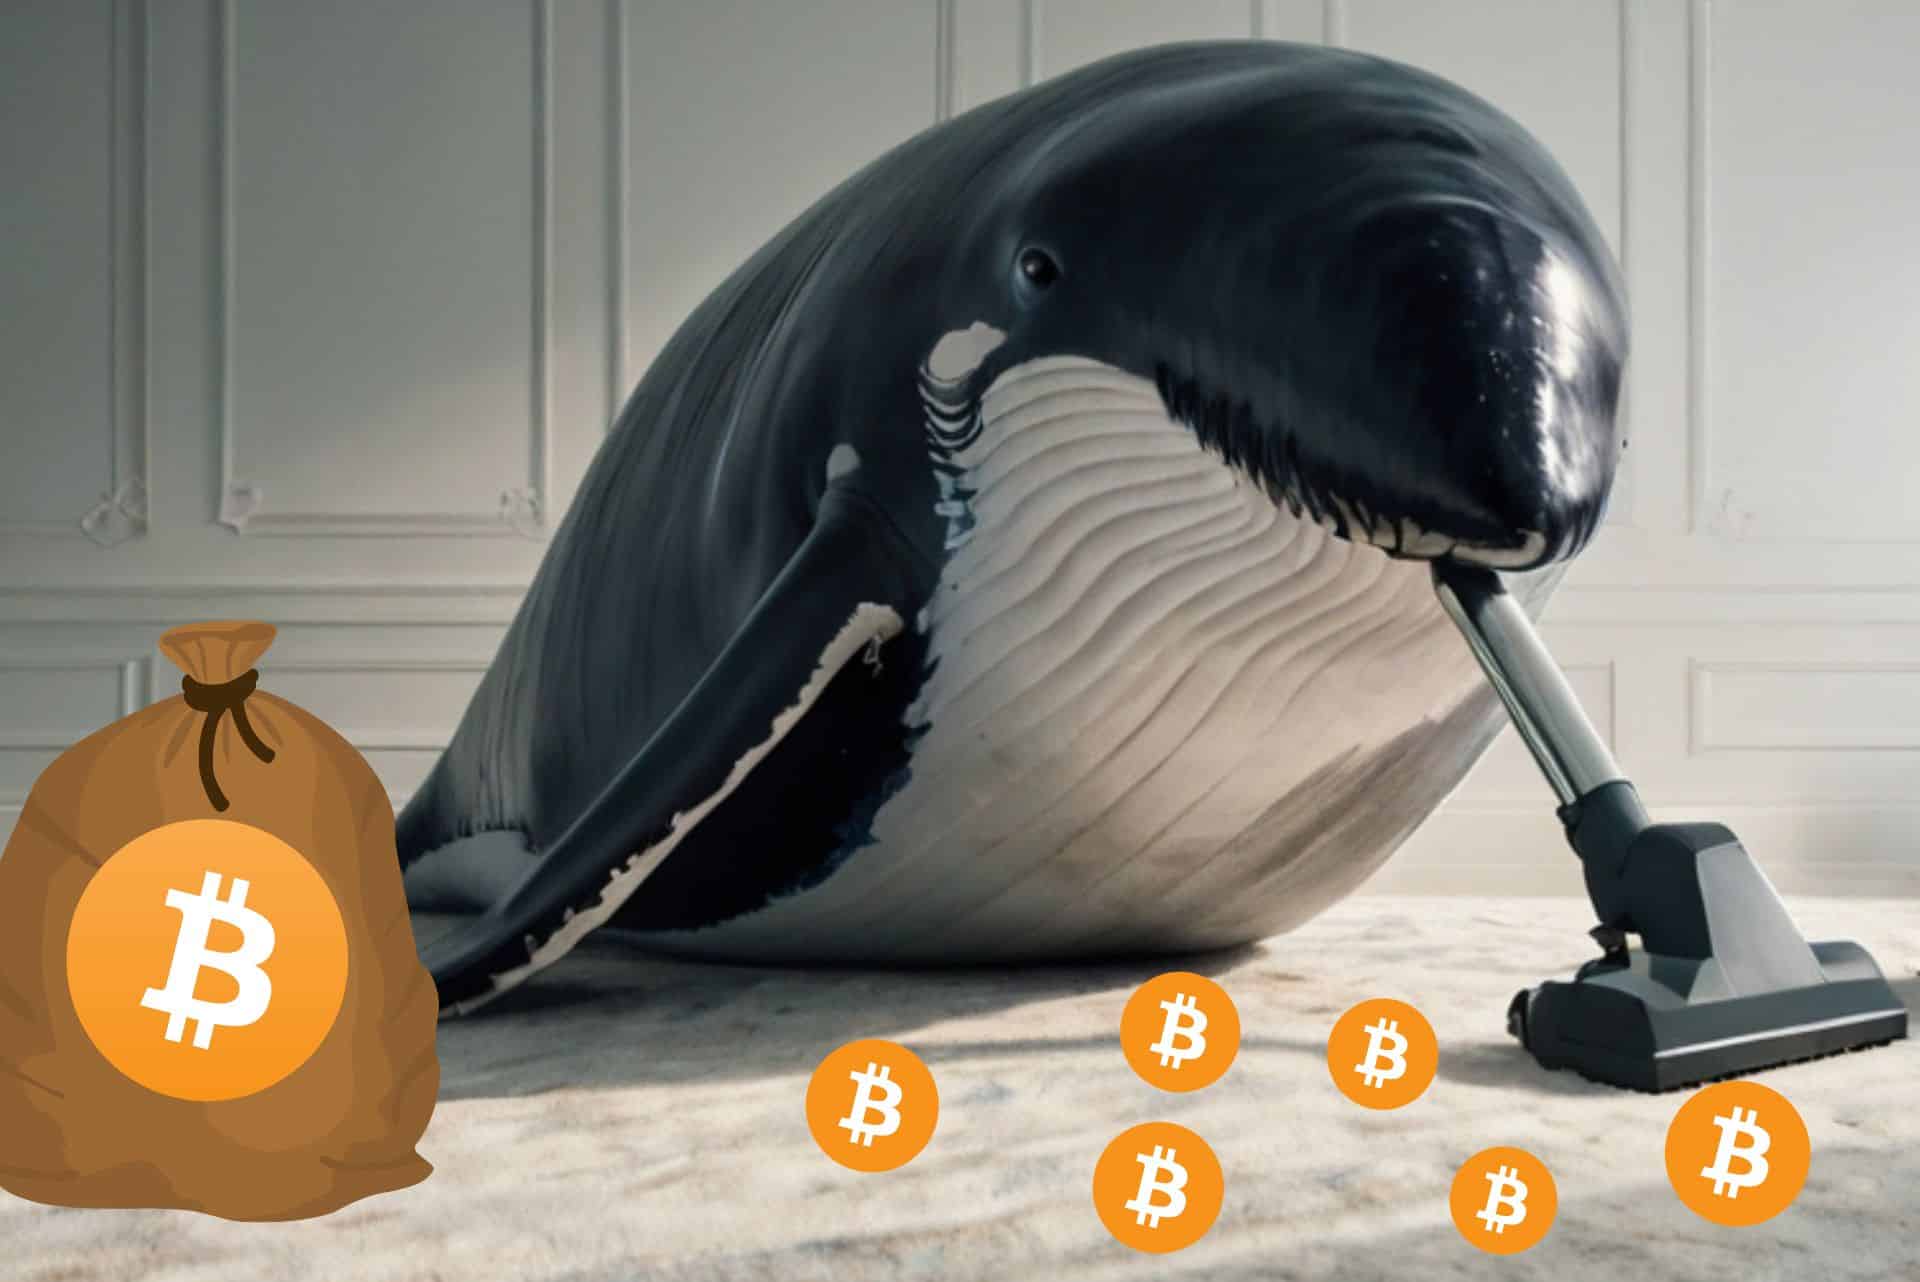 Wieloryb Bitcoina wciągający BTC z dywanu za pomocą odkurzacza. Obok worek z BTC.